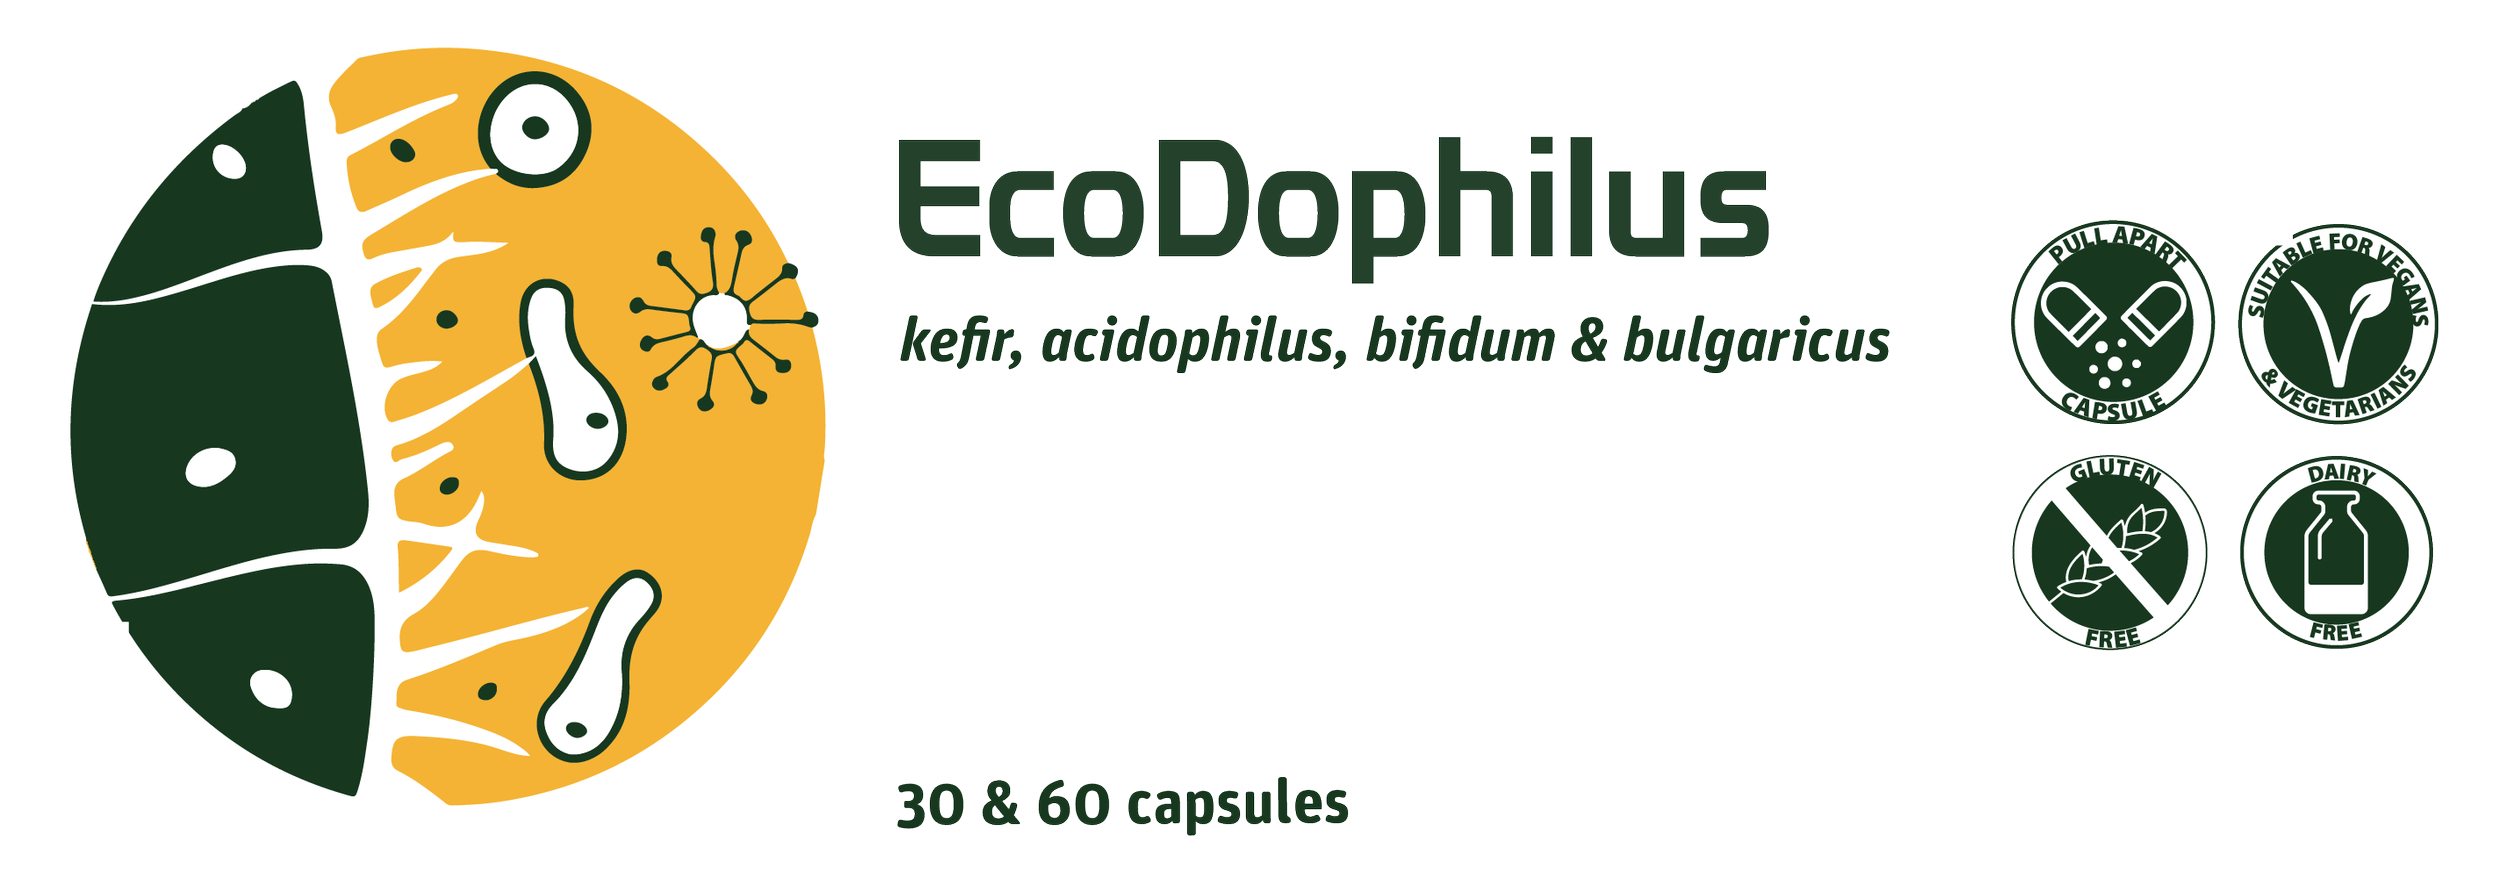 Ecodophilus 22 v2.png